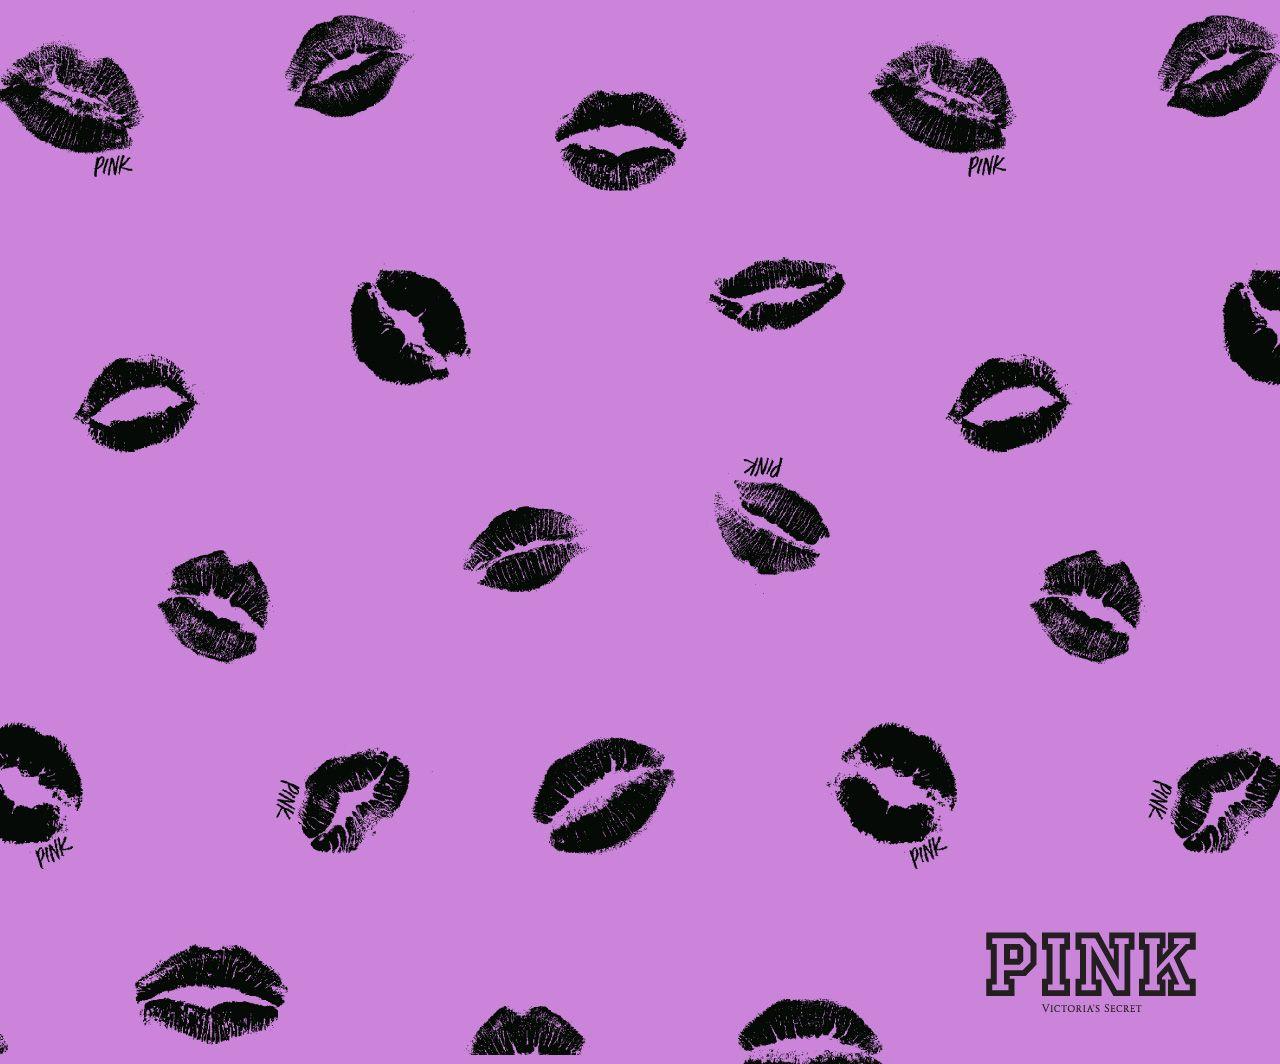 Pink Victoria Secret Wallpaper. Download